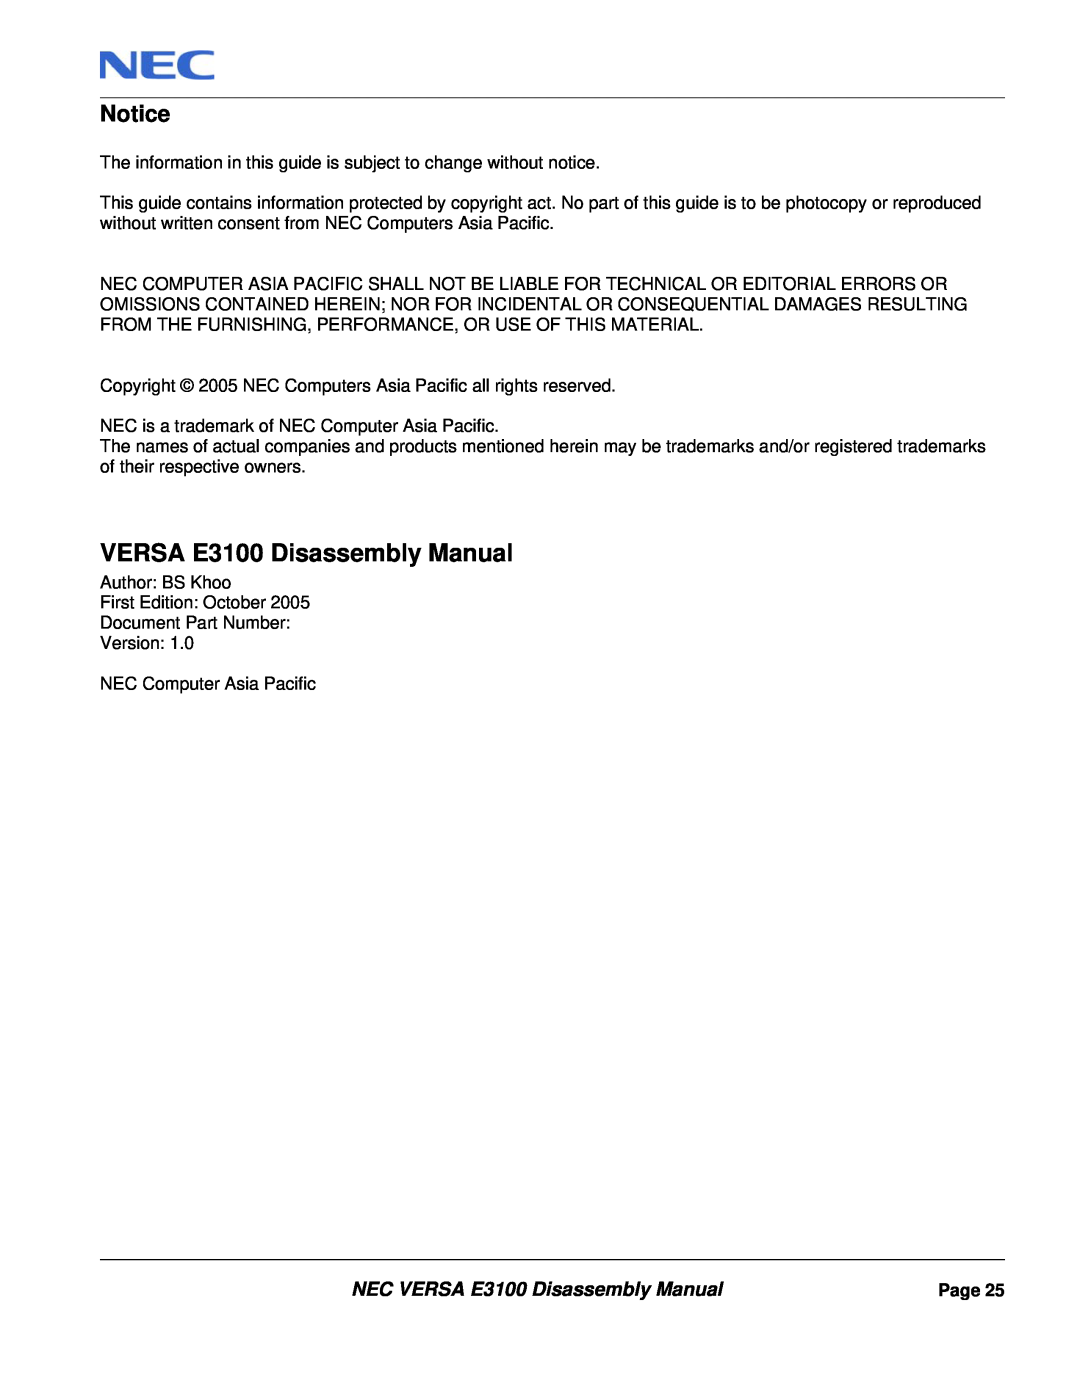 NEC manual Notice, NEC VERSA E3100 Disassembly Manual 